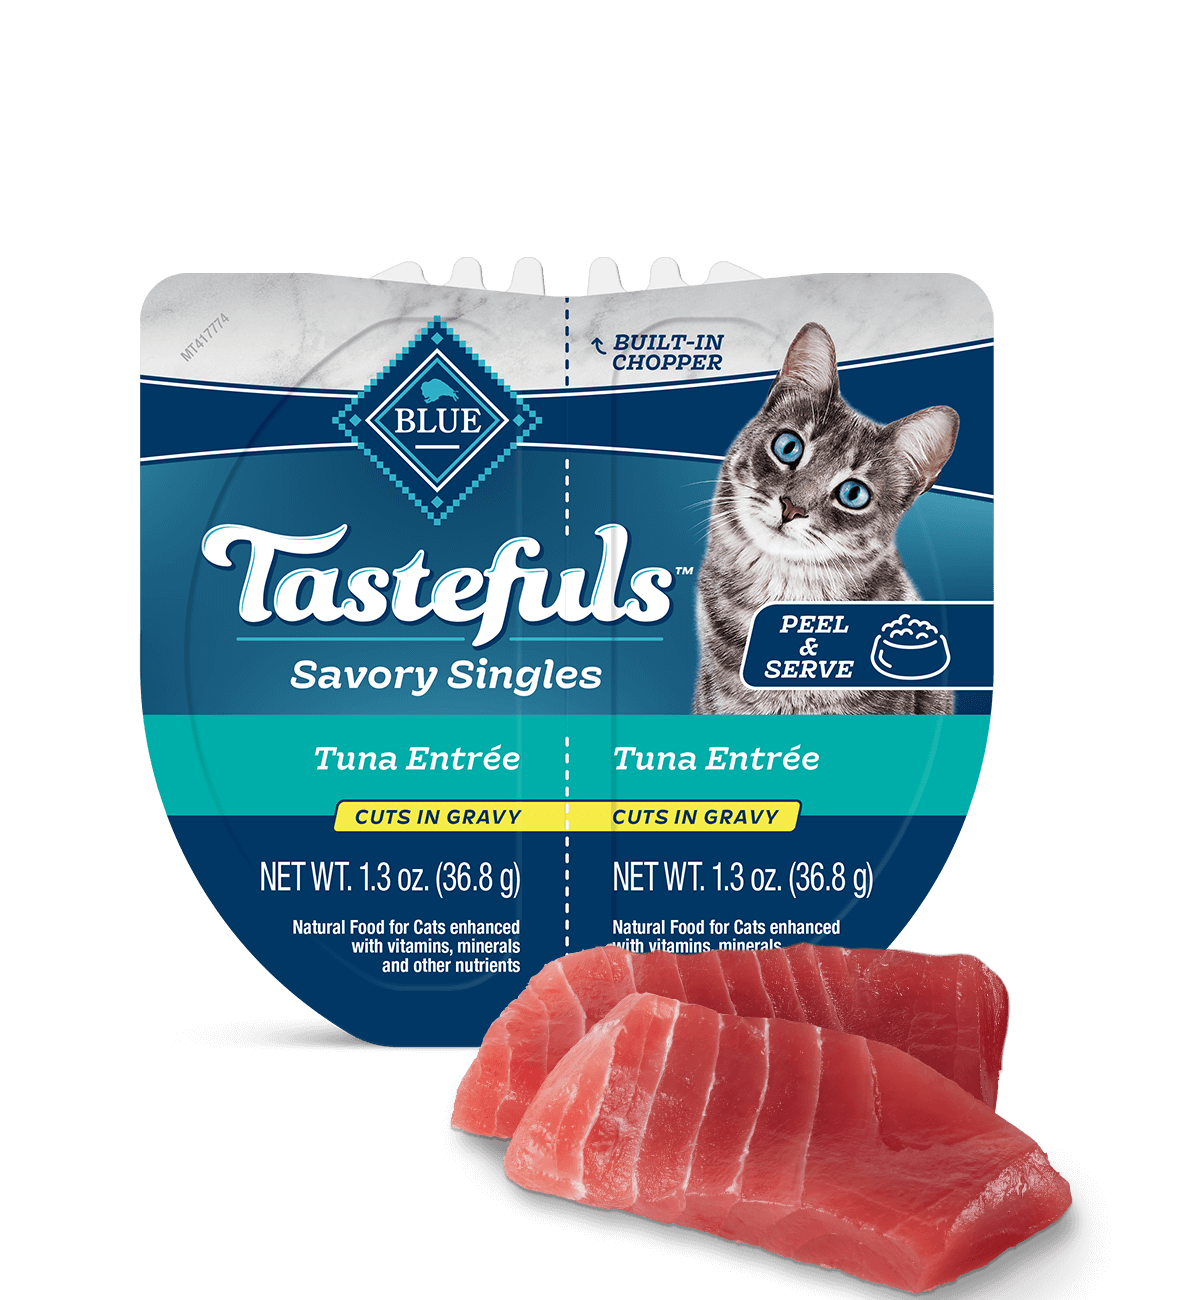 blue tastefuls savory singles tuna cuts in gravy cat wet food